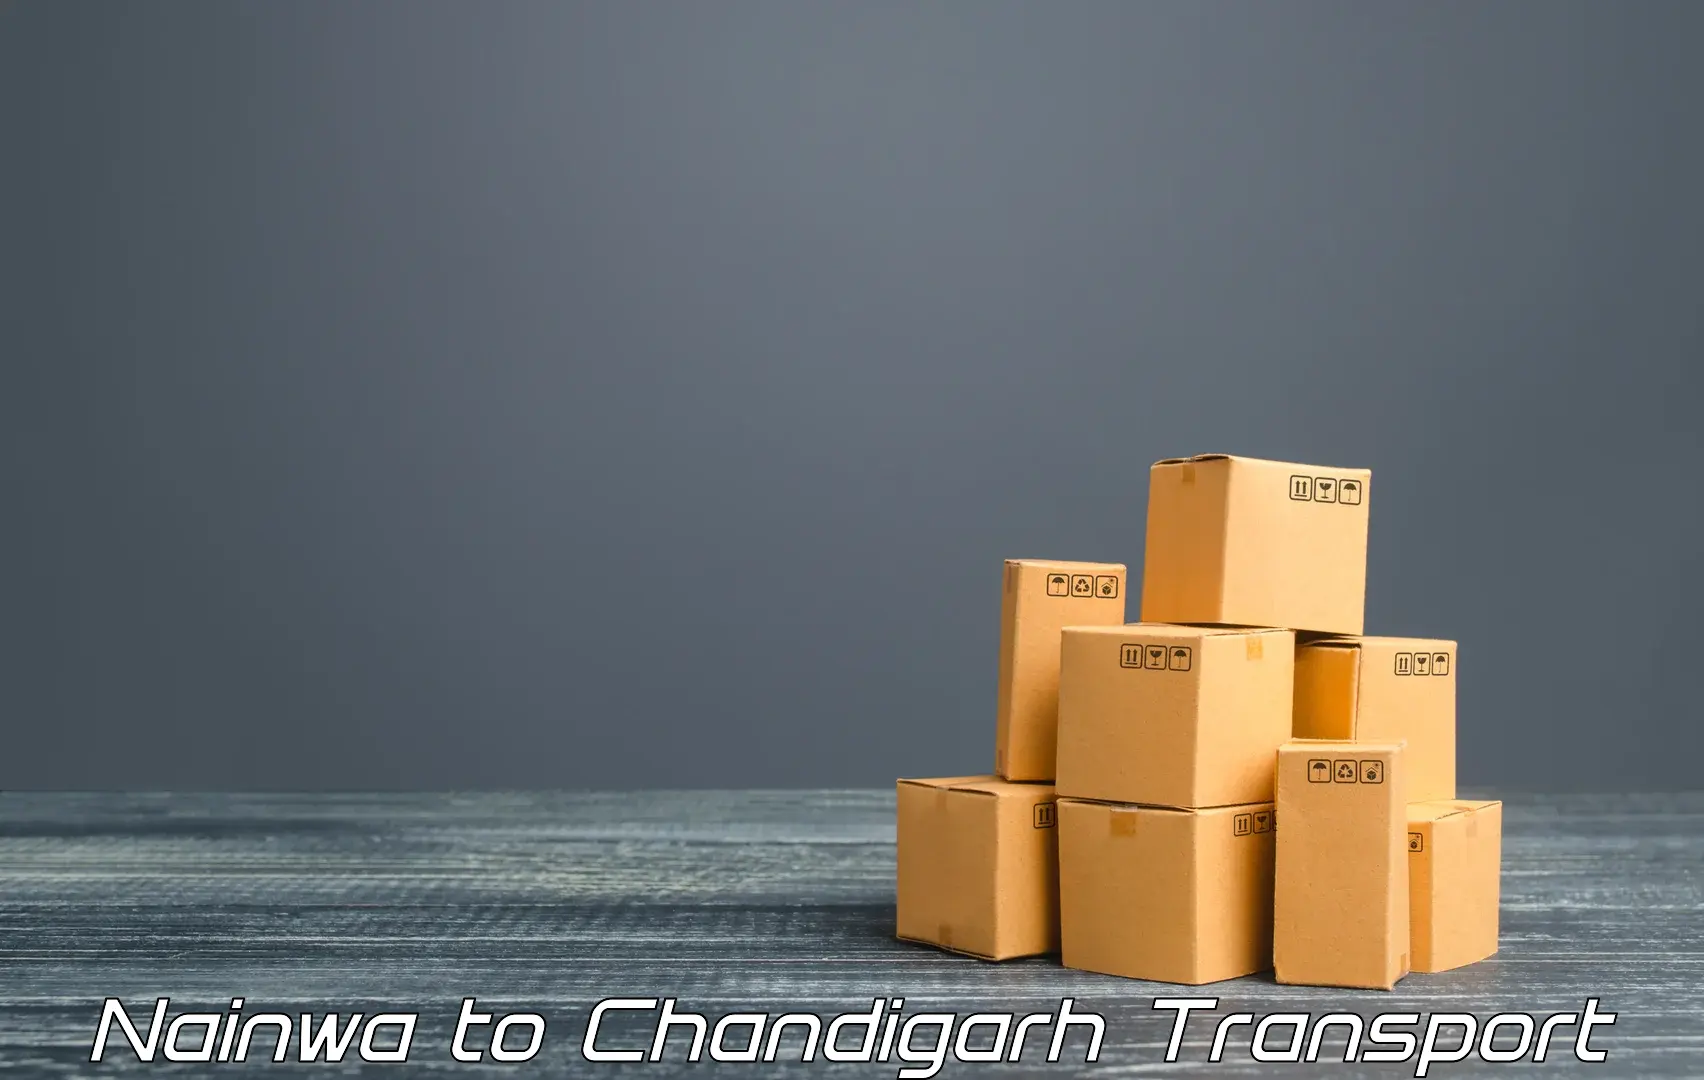 Shipping partner Nainwa to Chandigarh